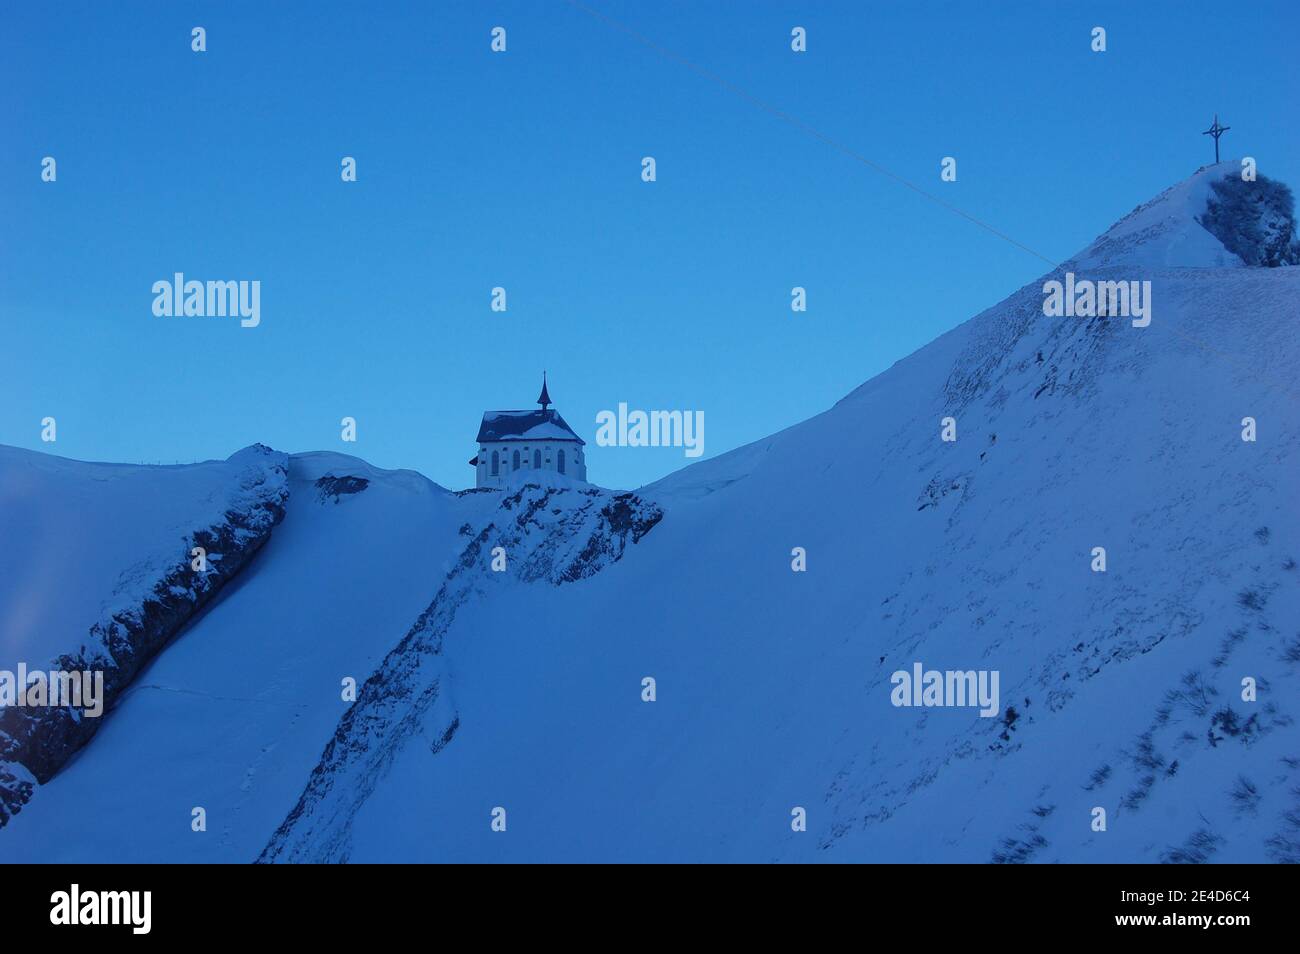 Blaue Farbtöne auf verschneiten Bildern des Pilatus in Swaterzalnd im Winter und klarer blauer Himmel darüber. Kein Fotofilter verwendet. Tageslicht. Stockfoto